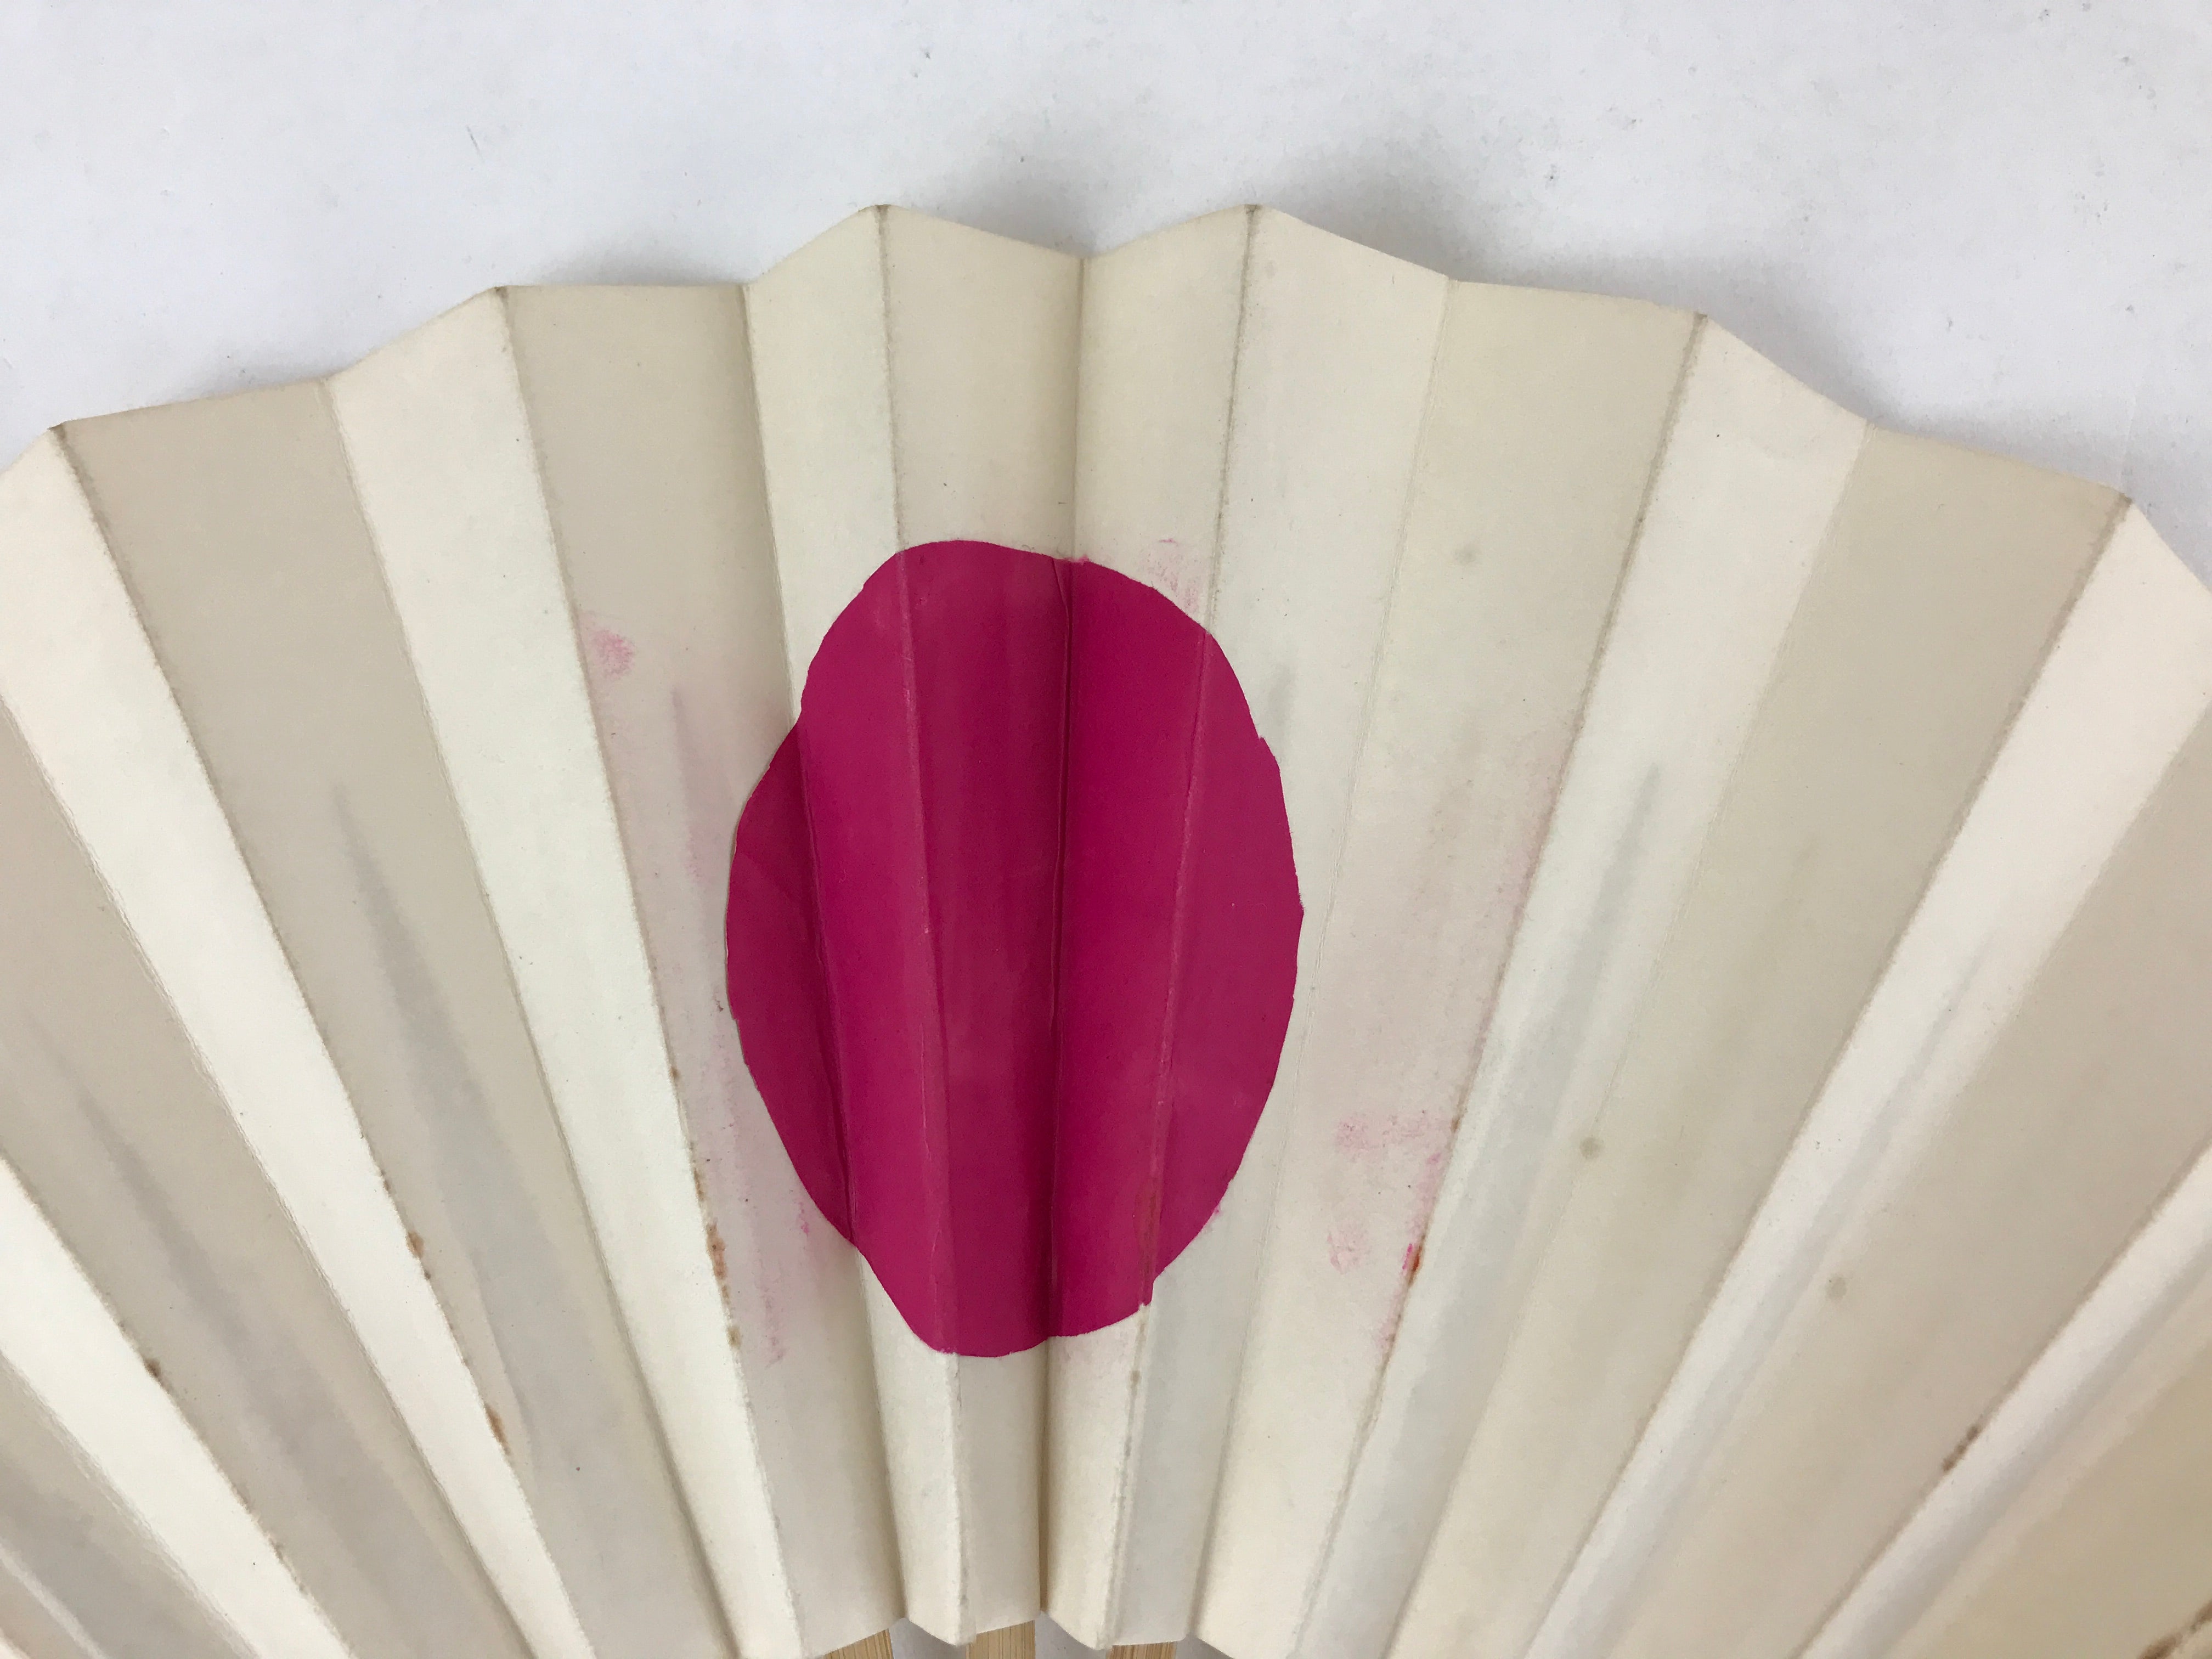 Japanese Folding Fan Sensu Vtg Bamboo Frame Rising Sun National Flag Red 4D738